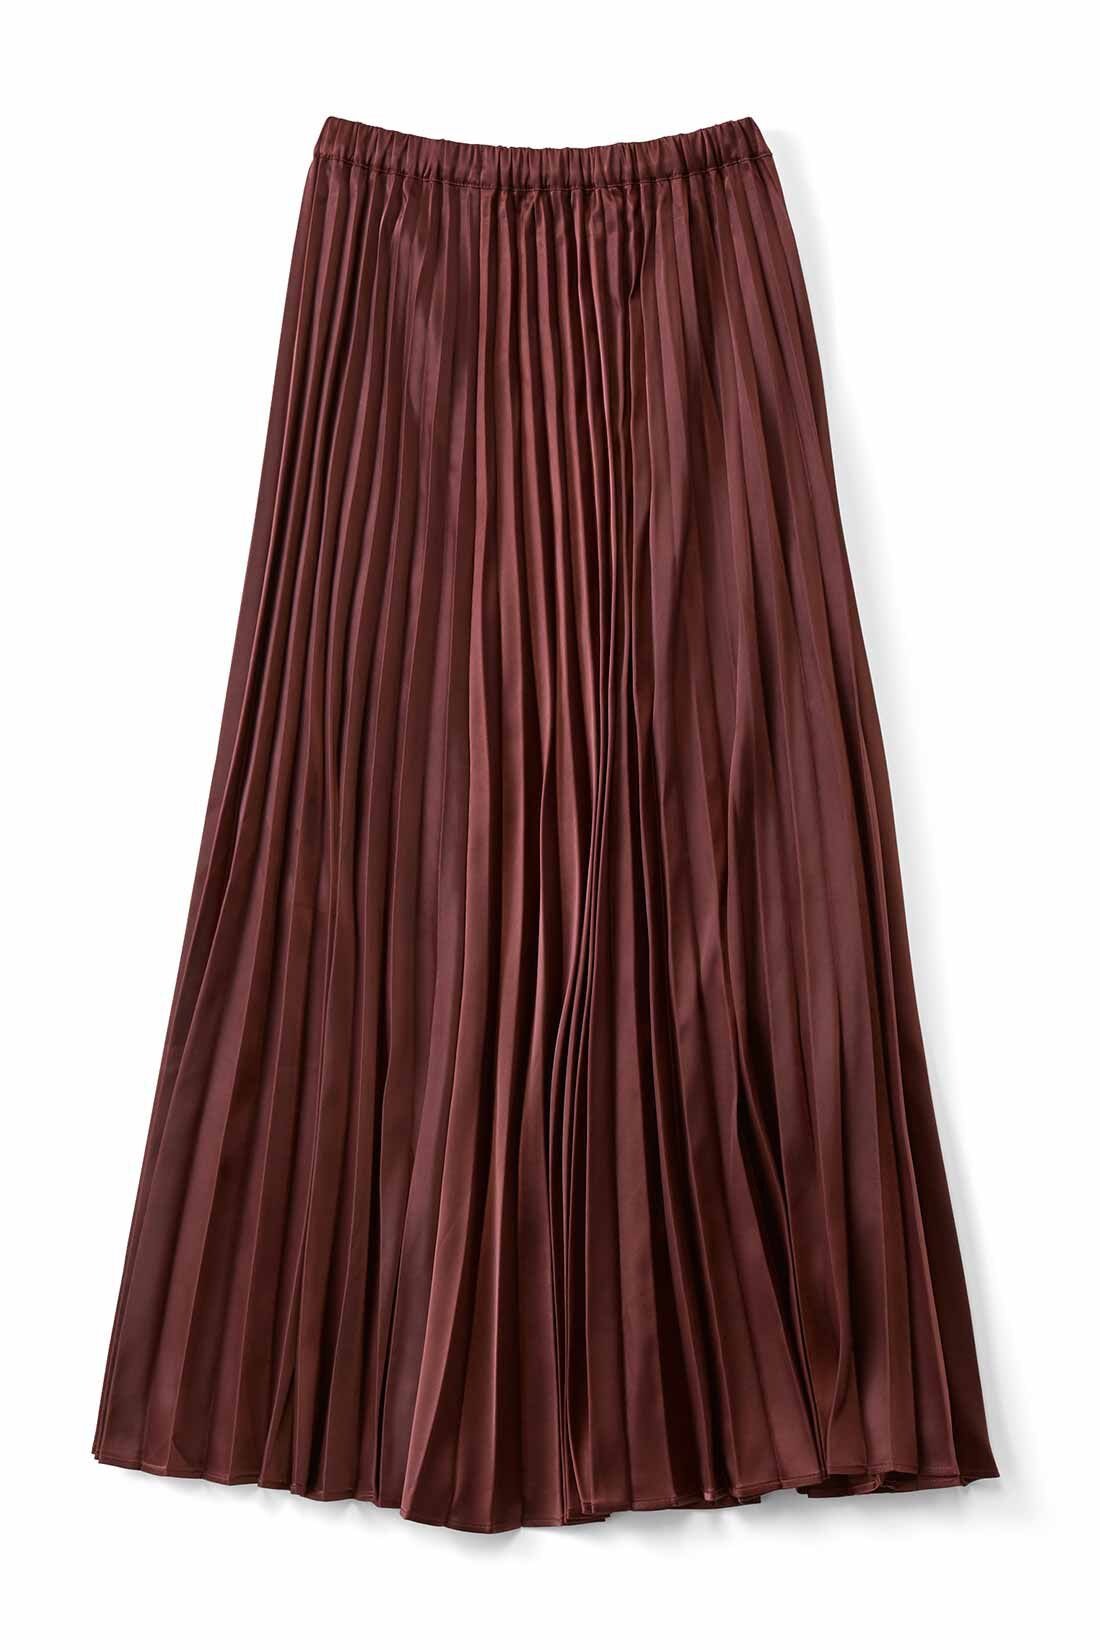 シロップ．|シルエットがキレイなサテンプリーツスカート〈ブラウン〉